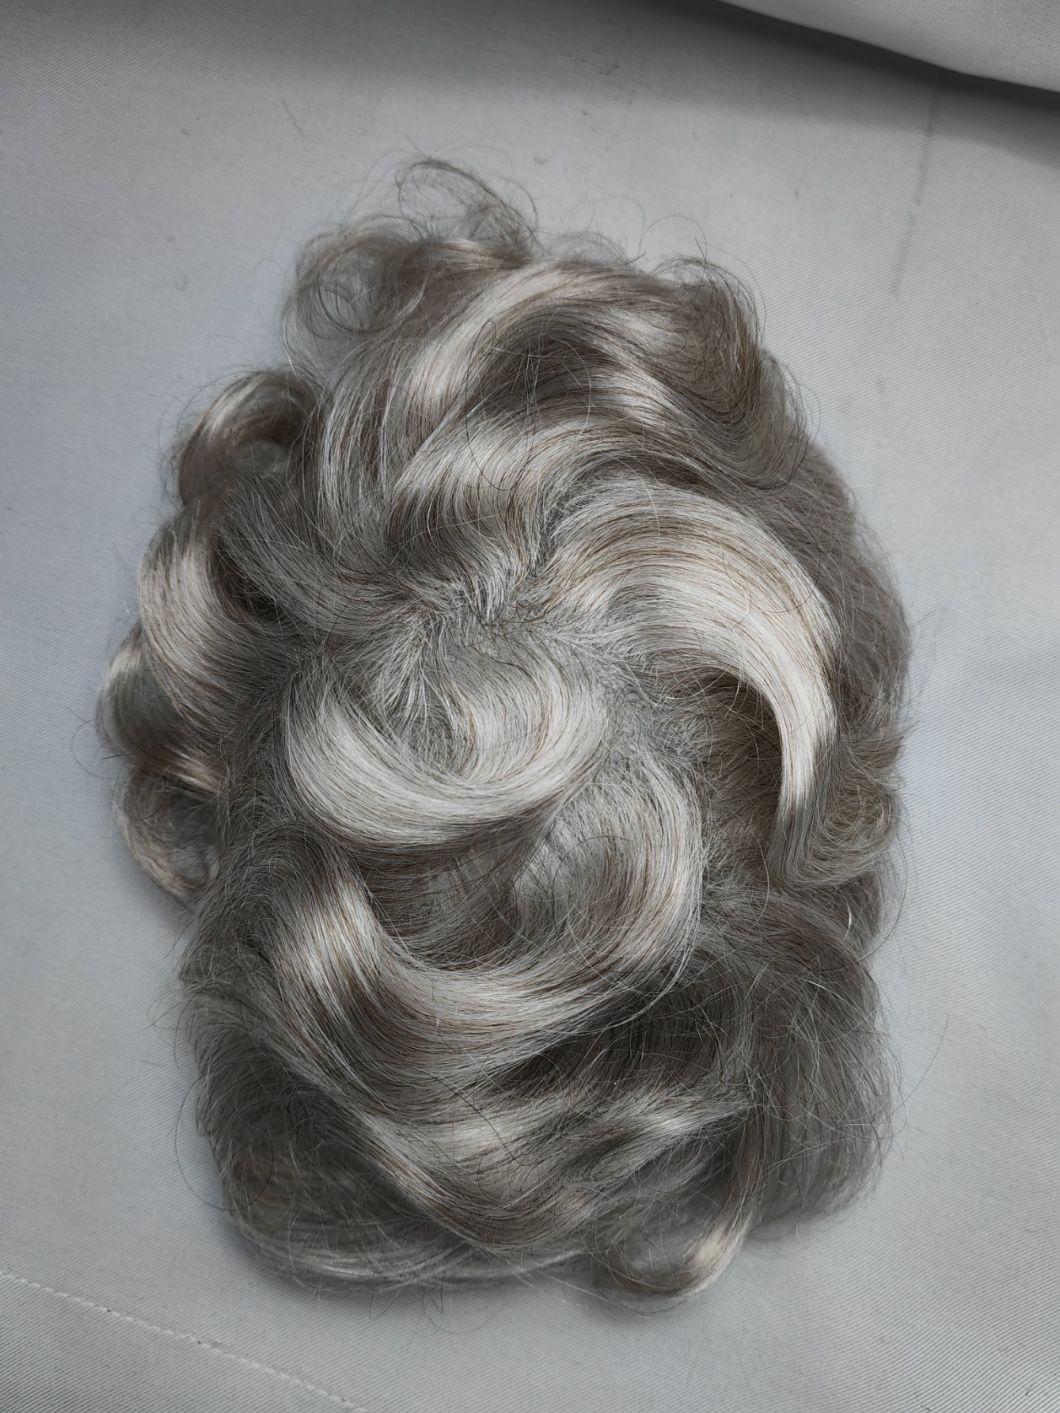 2022 Most Natural Super Thin Poly Human Hair Wig Made of Remy Human Hair (V-Looping)